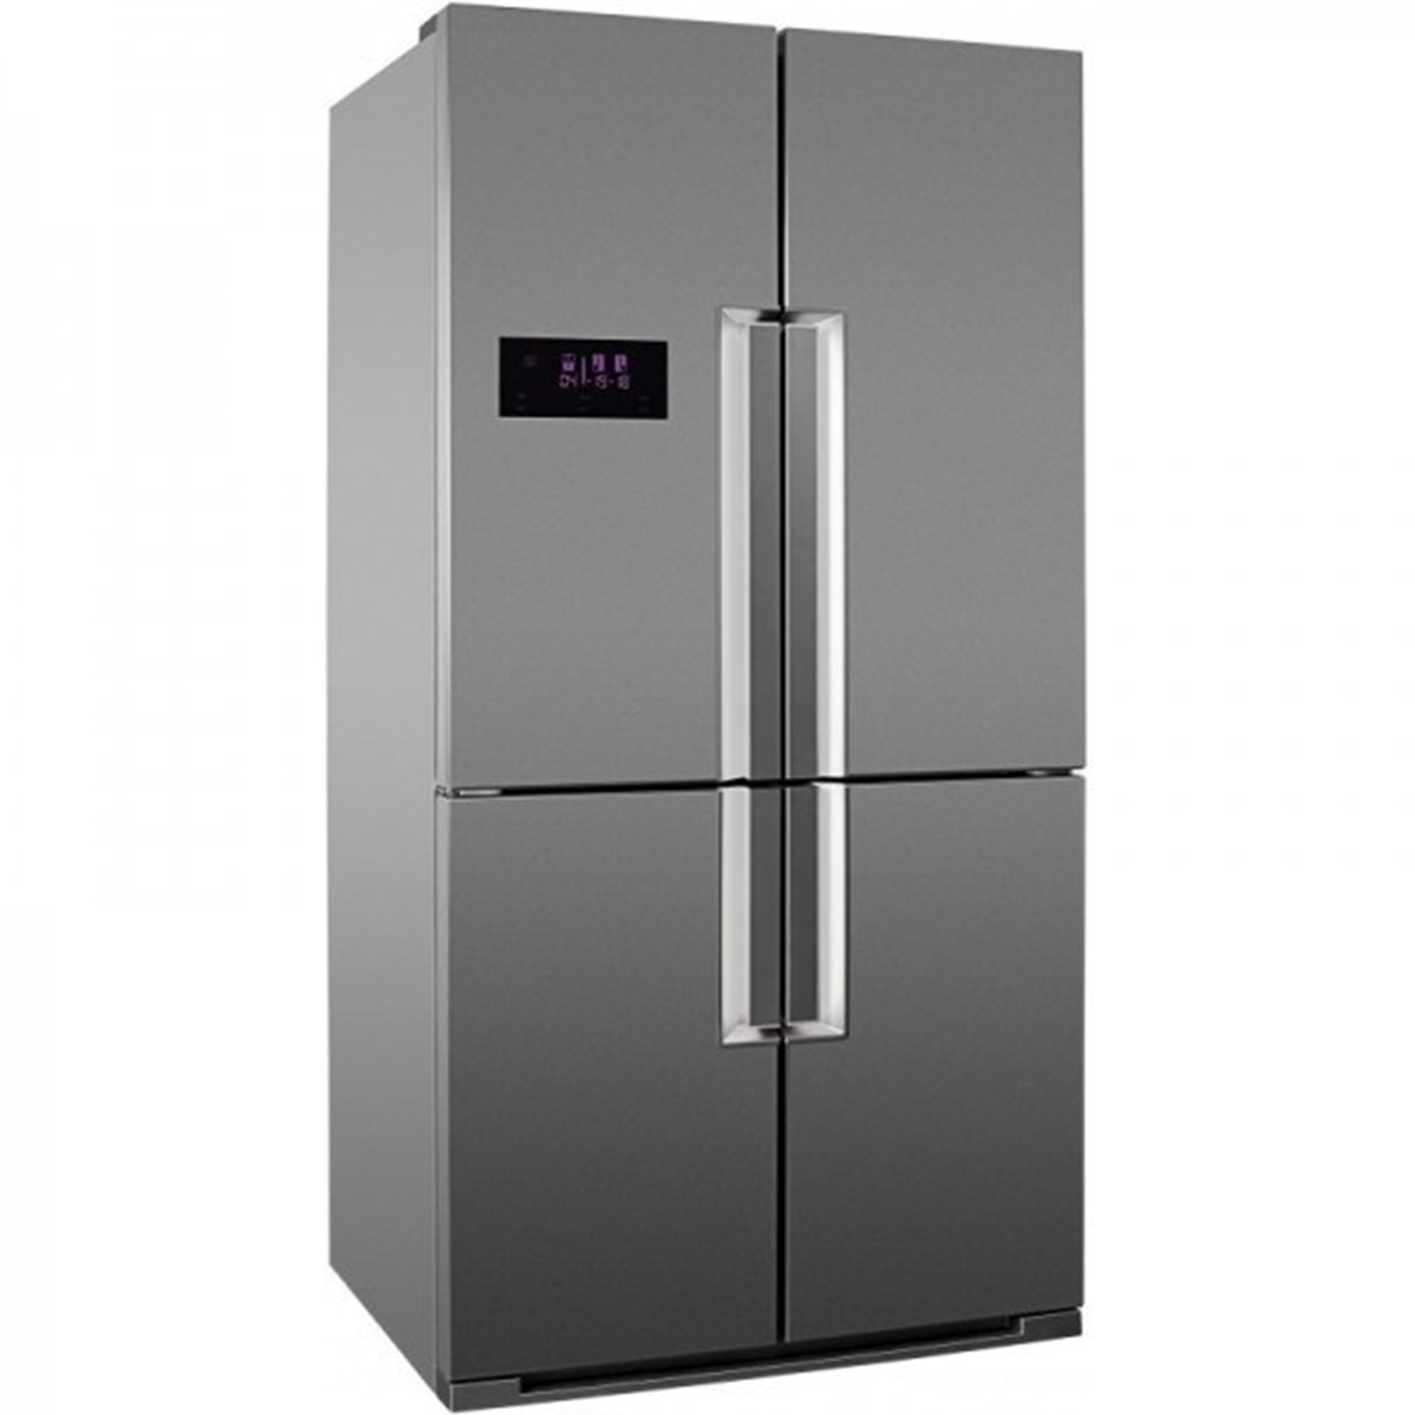 Hình ảnh của Tủ lạnh 4 cửa Hafele 539.16.230